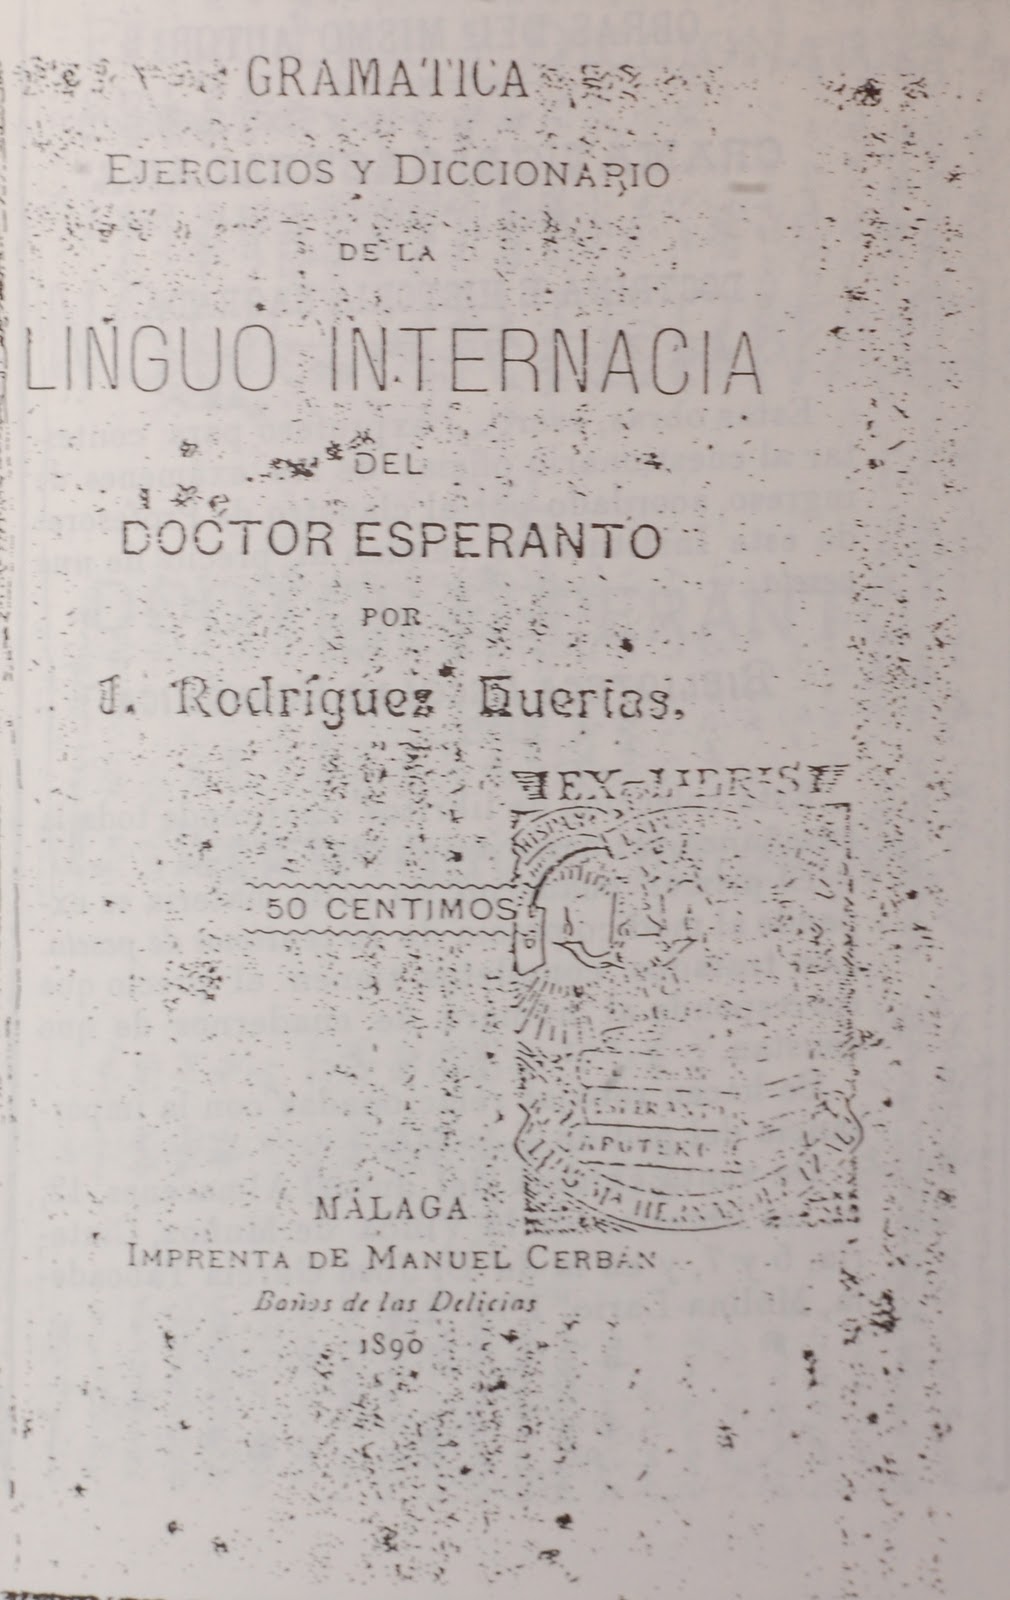 Gramática, ejercicios y diccionario de la linguo internacia del doctor Esperanto